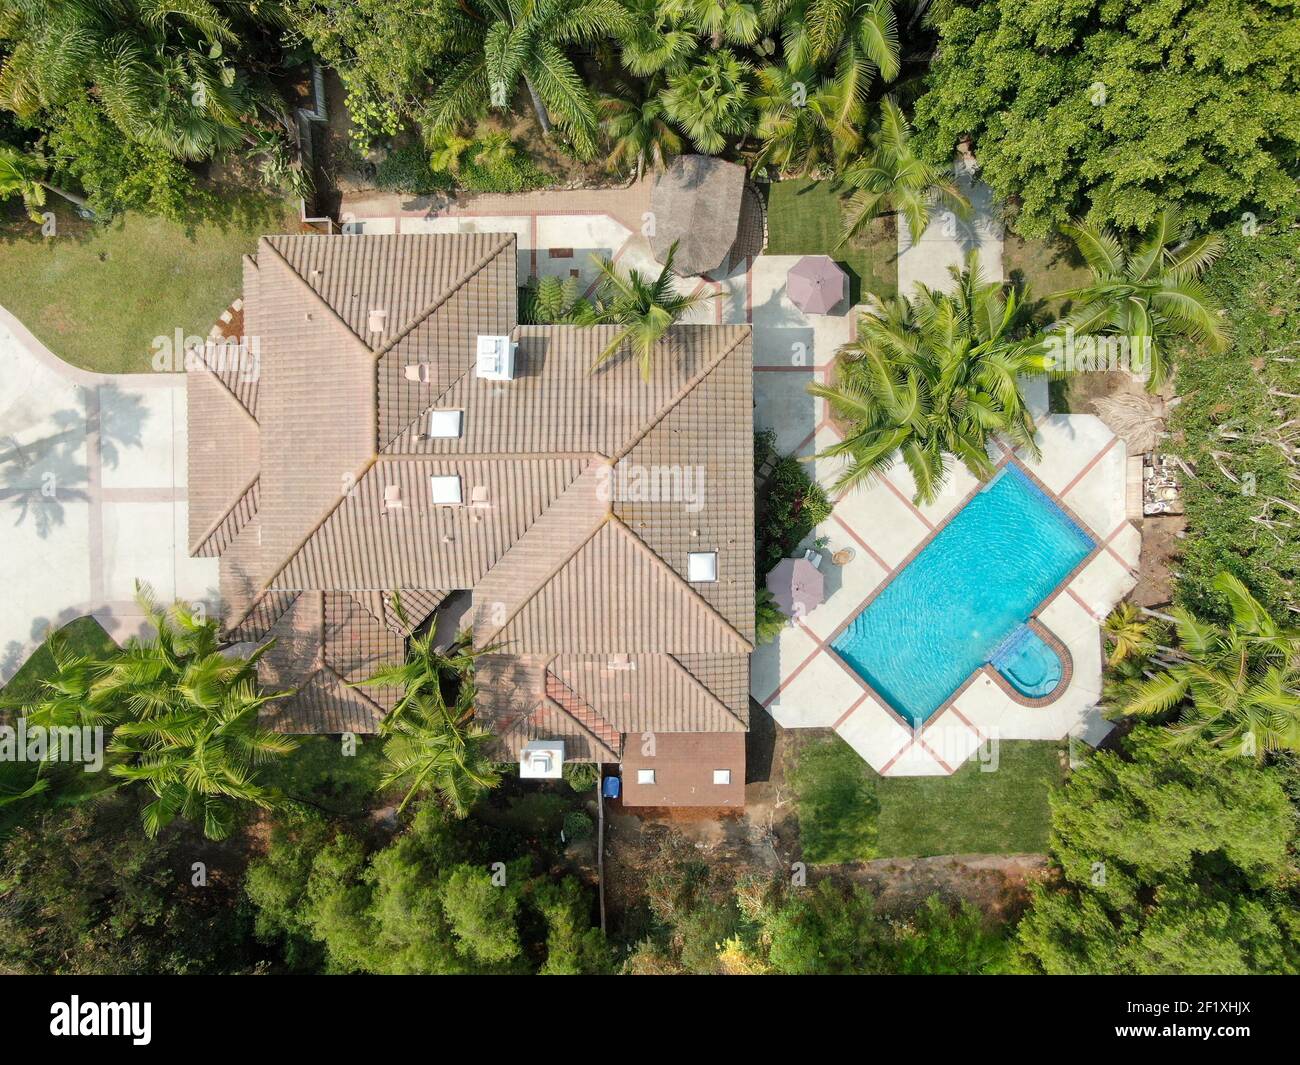 Vista aérea de la villa residencial a gran escala con piscina Foto de stock